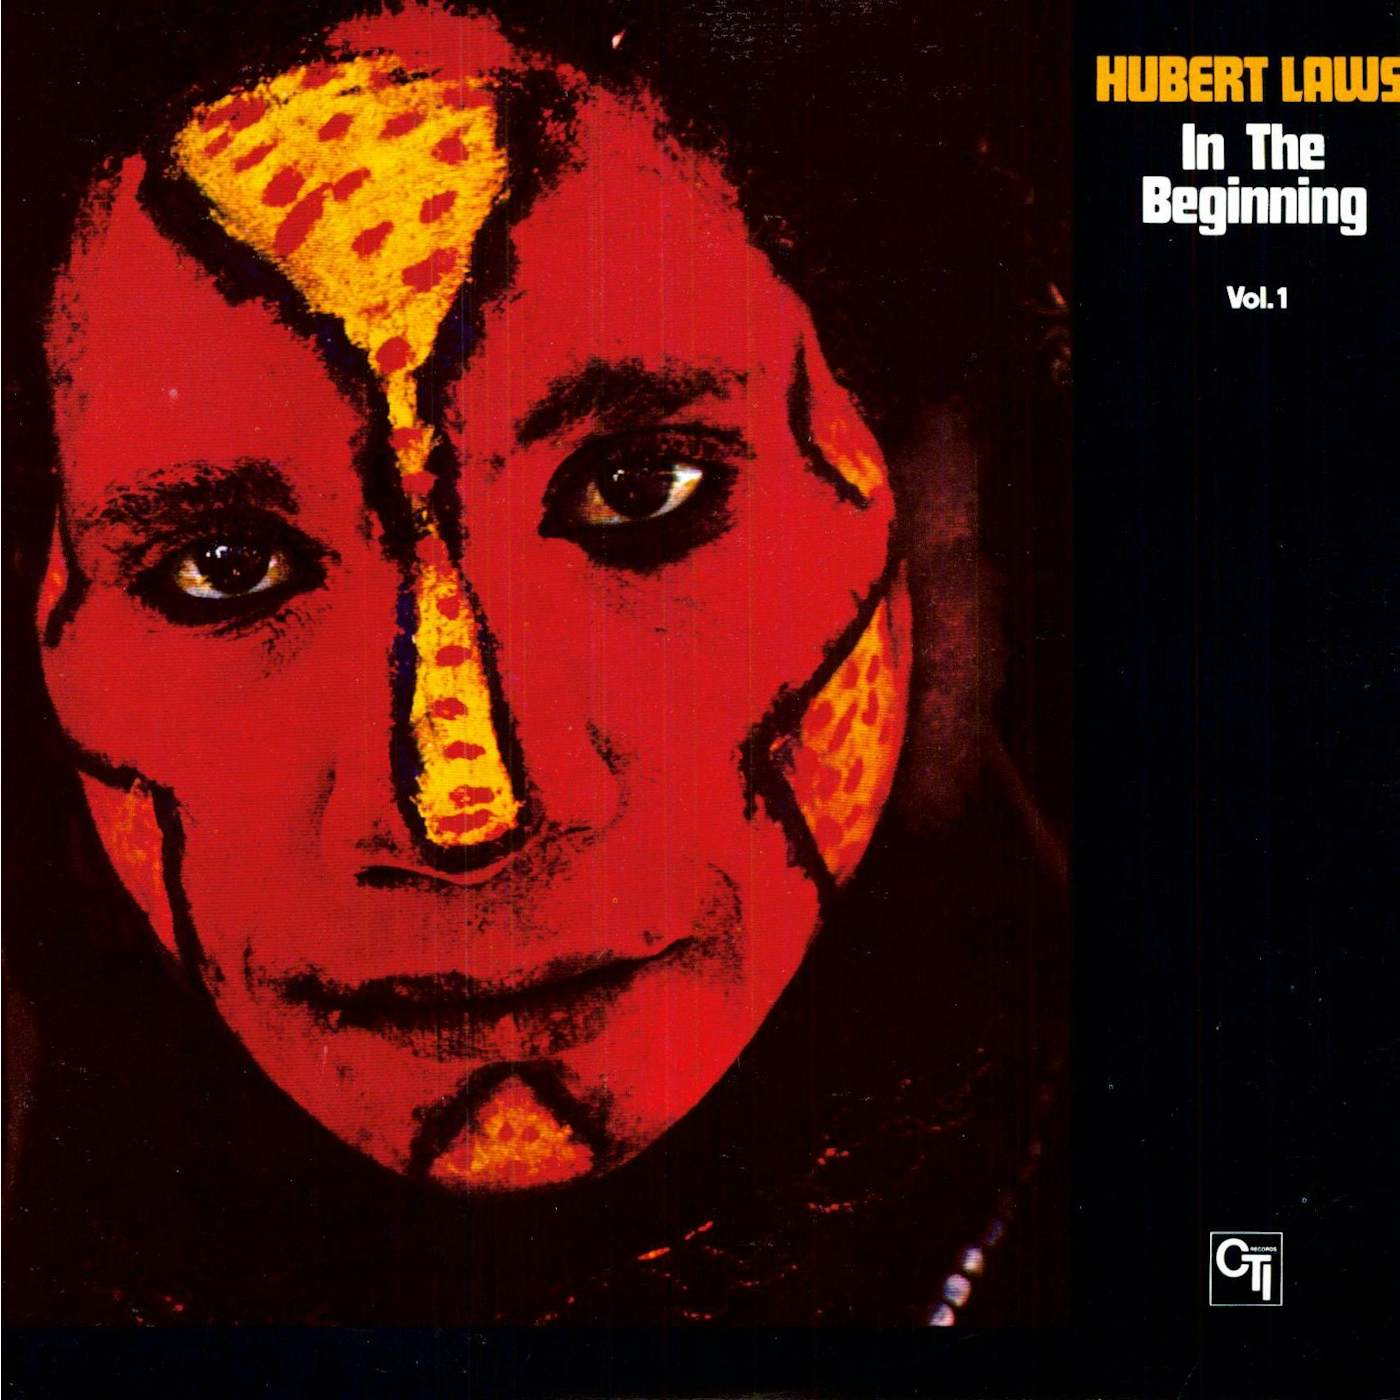 Hubert Laws IN THE BEGINNING 1 Vinyl Record